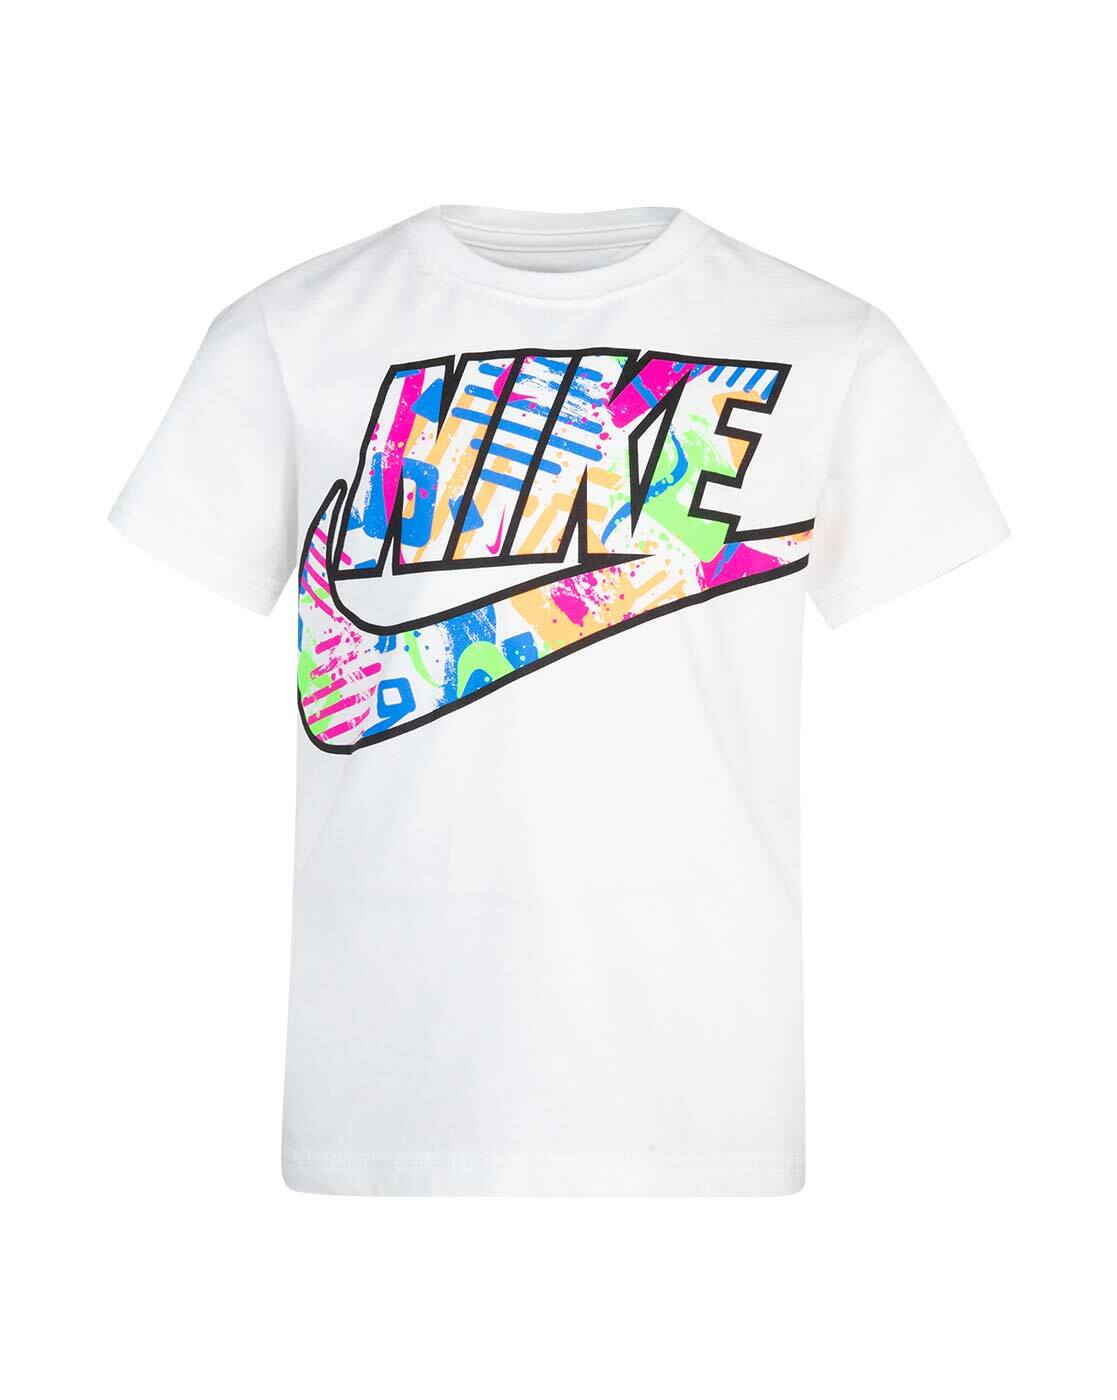 Mooi Verbetering onvoorwaardelijk Buy White Tshirts for Boys by NIKE Online | Ajio.com